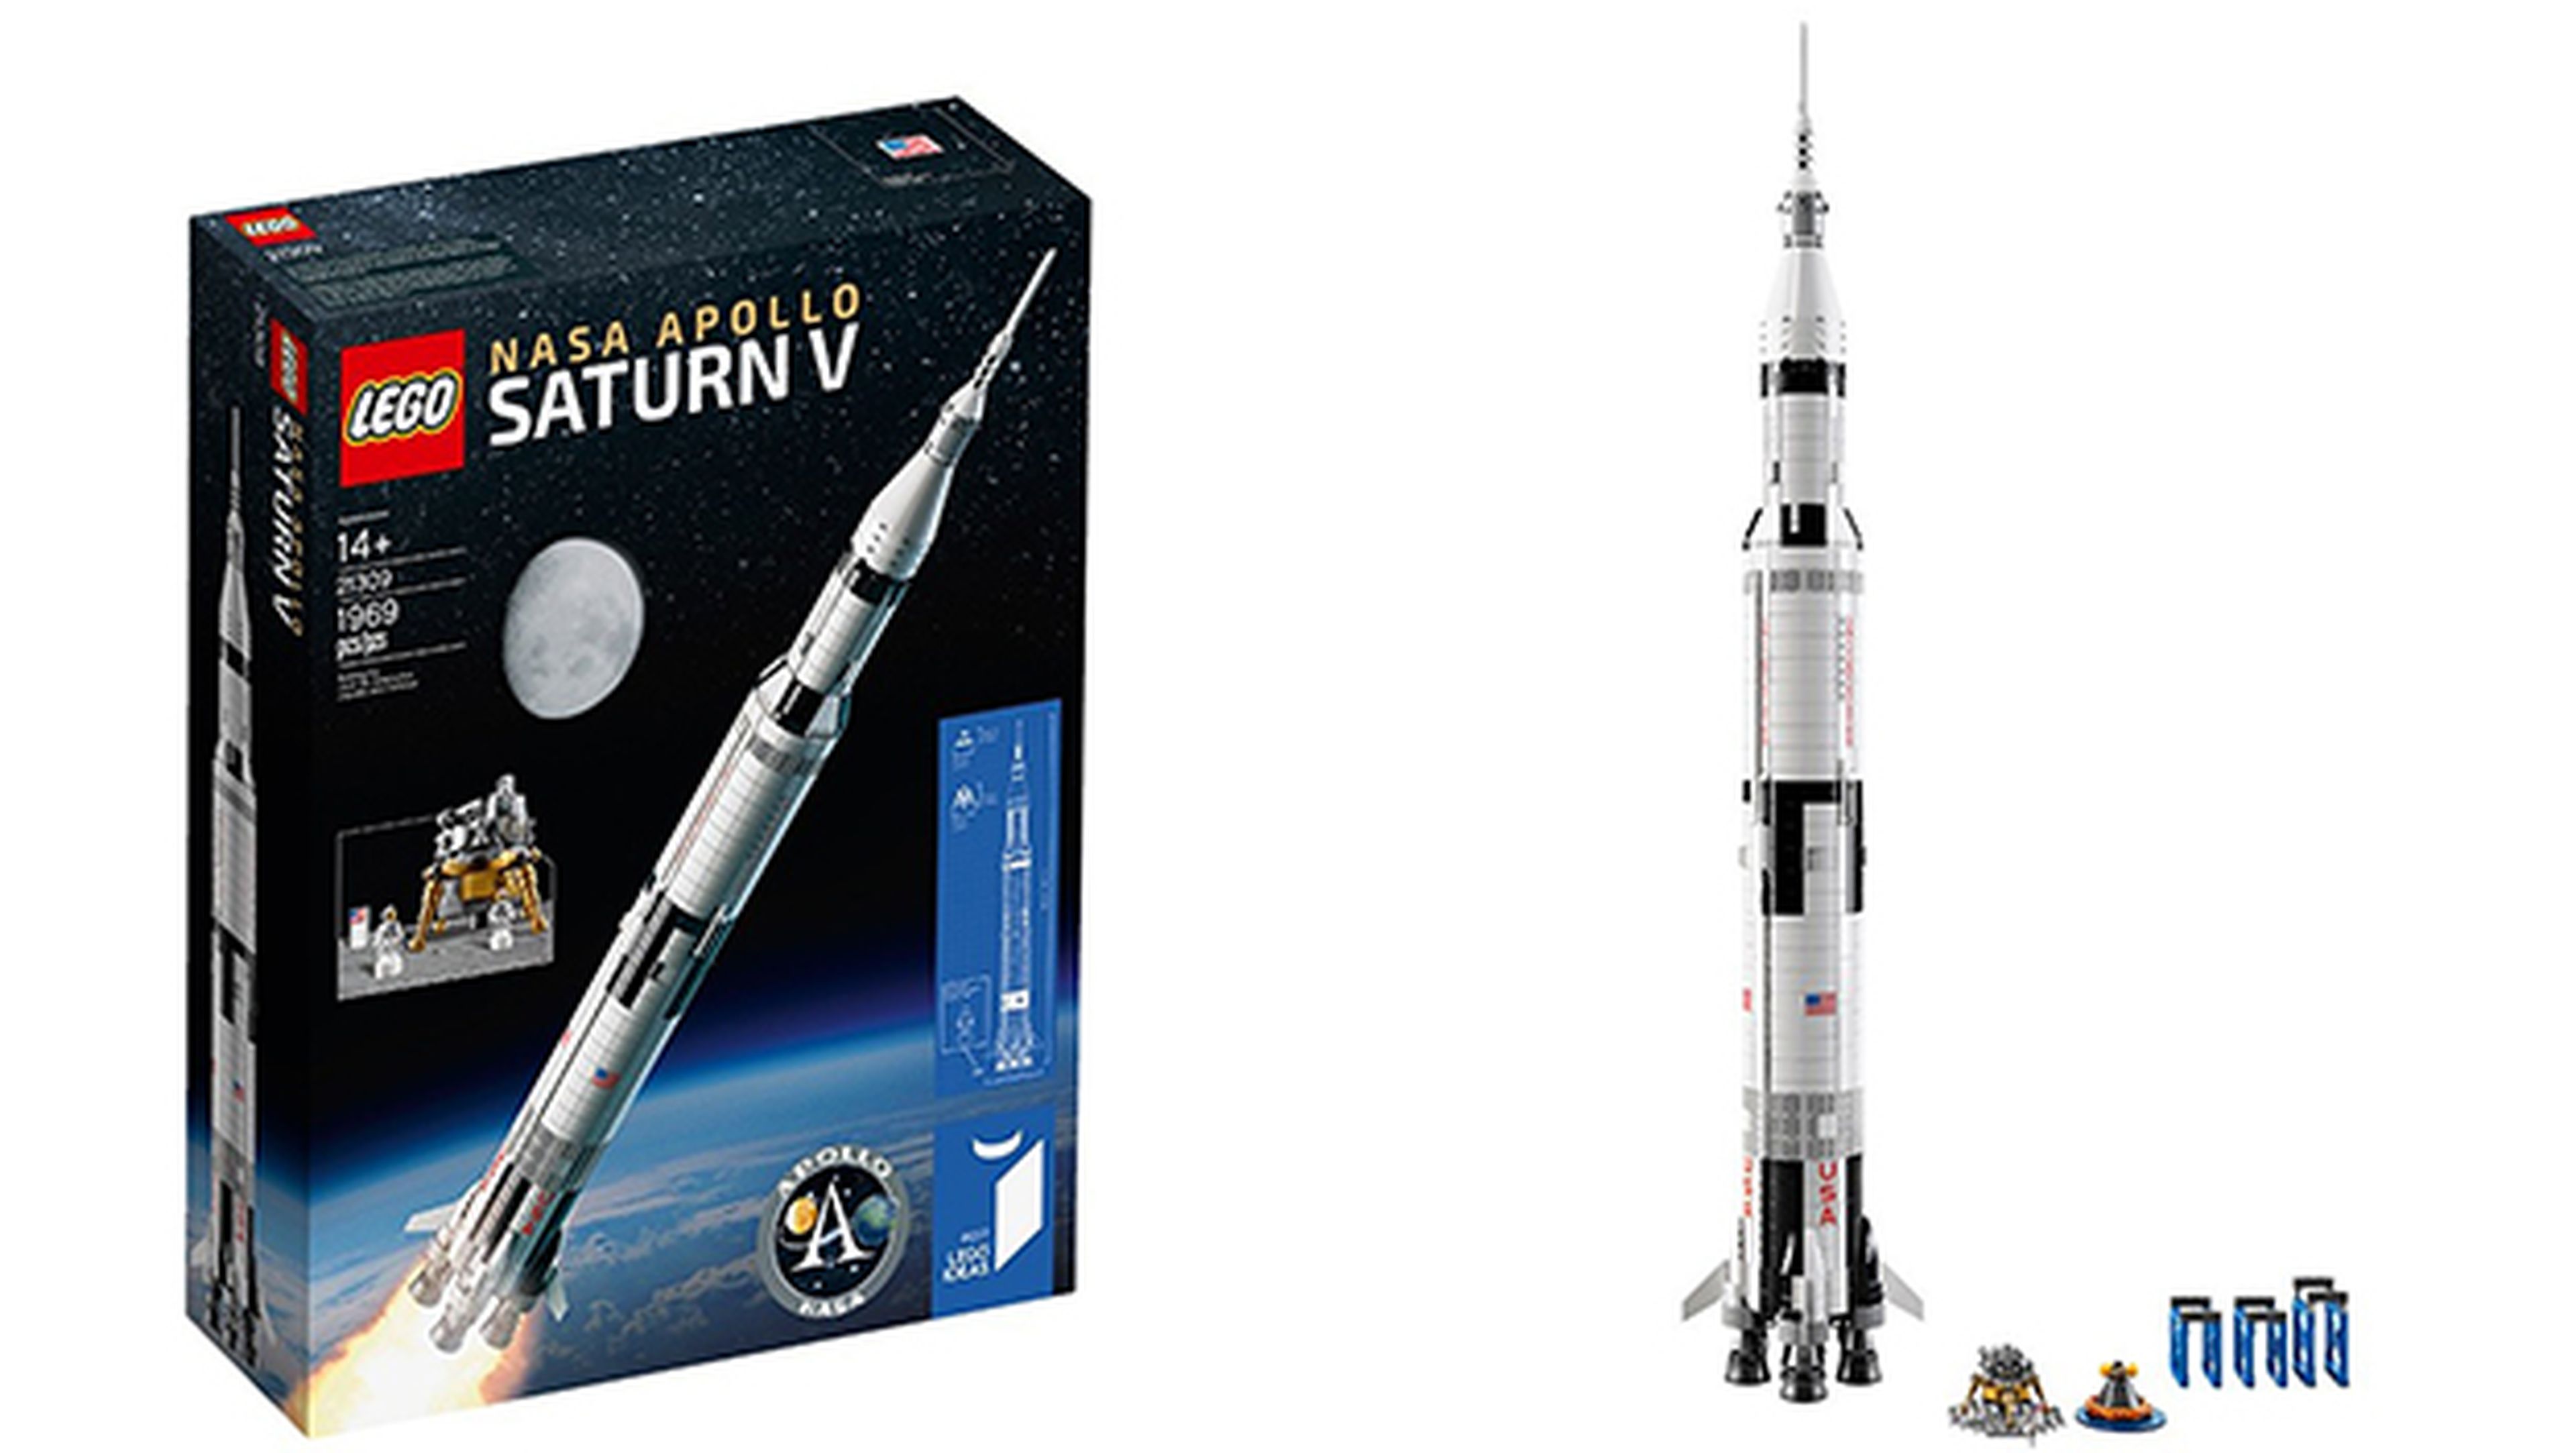 Este cohete Saturno V de LEGO mide nada menos que 1 metro